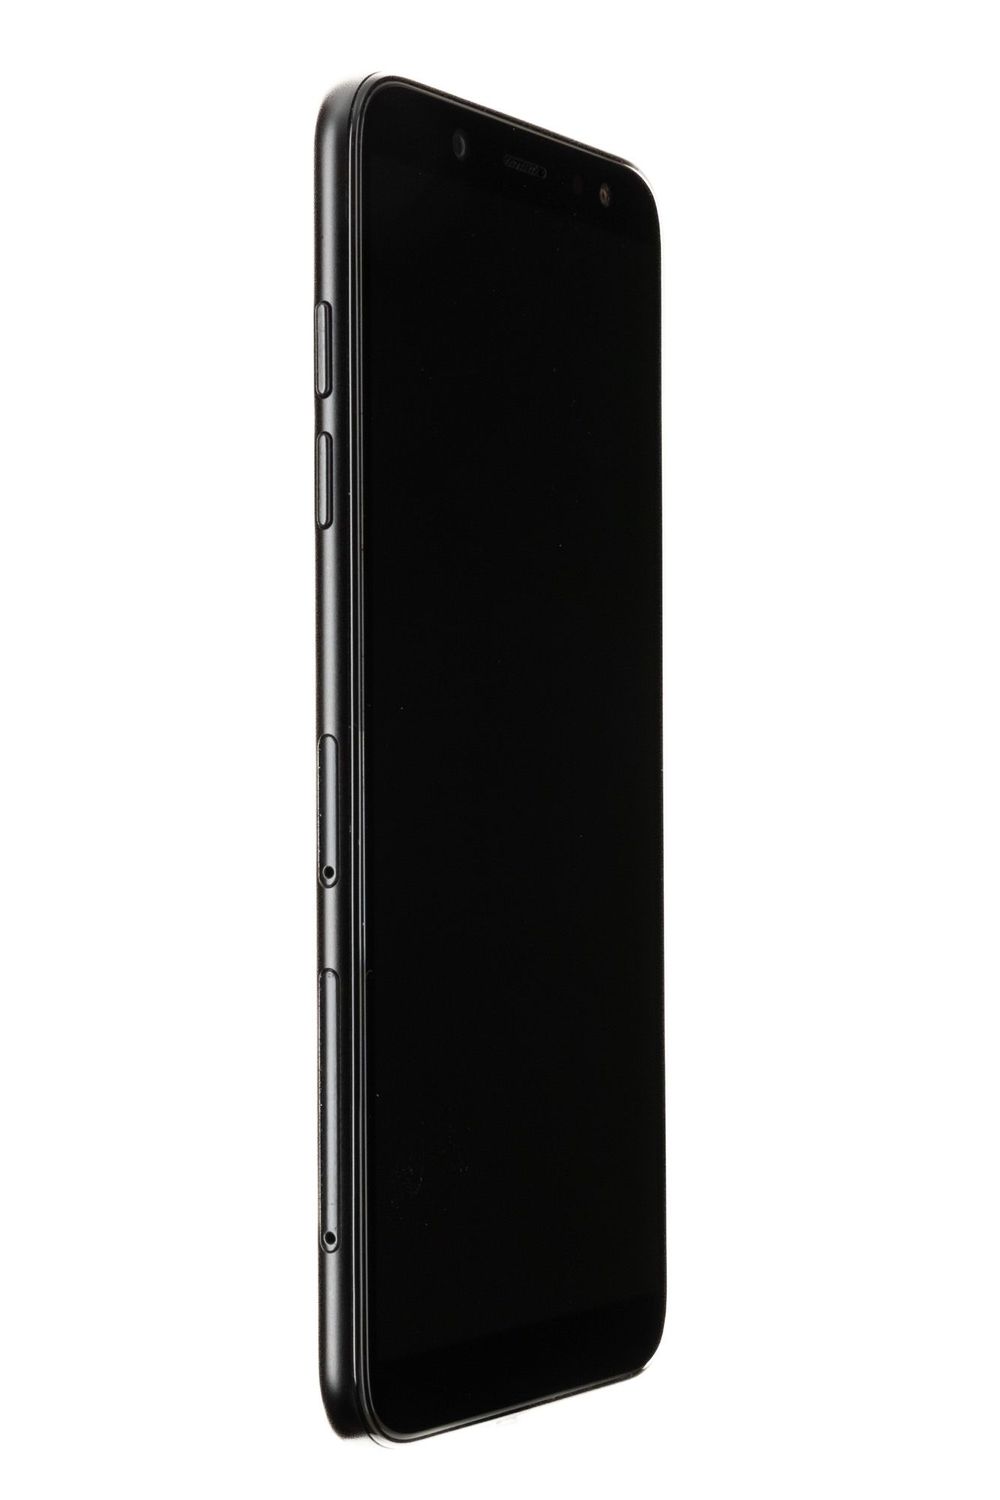 Κινητό τηλέφωνο Samsung Galaxy A6 (2018), Black, 64 GB, Bun